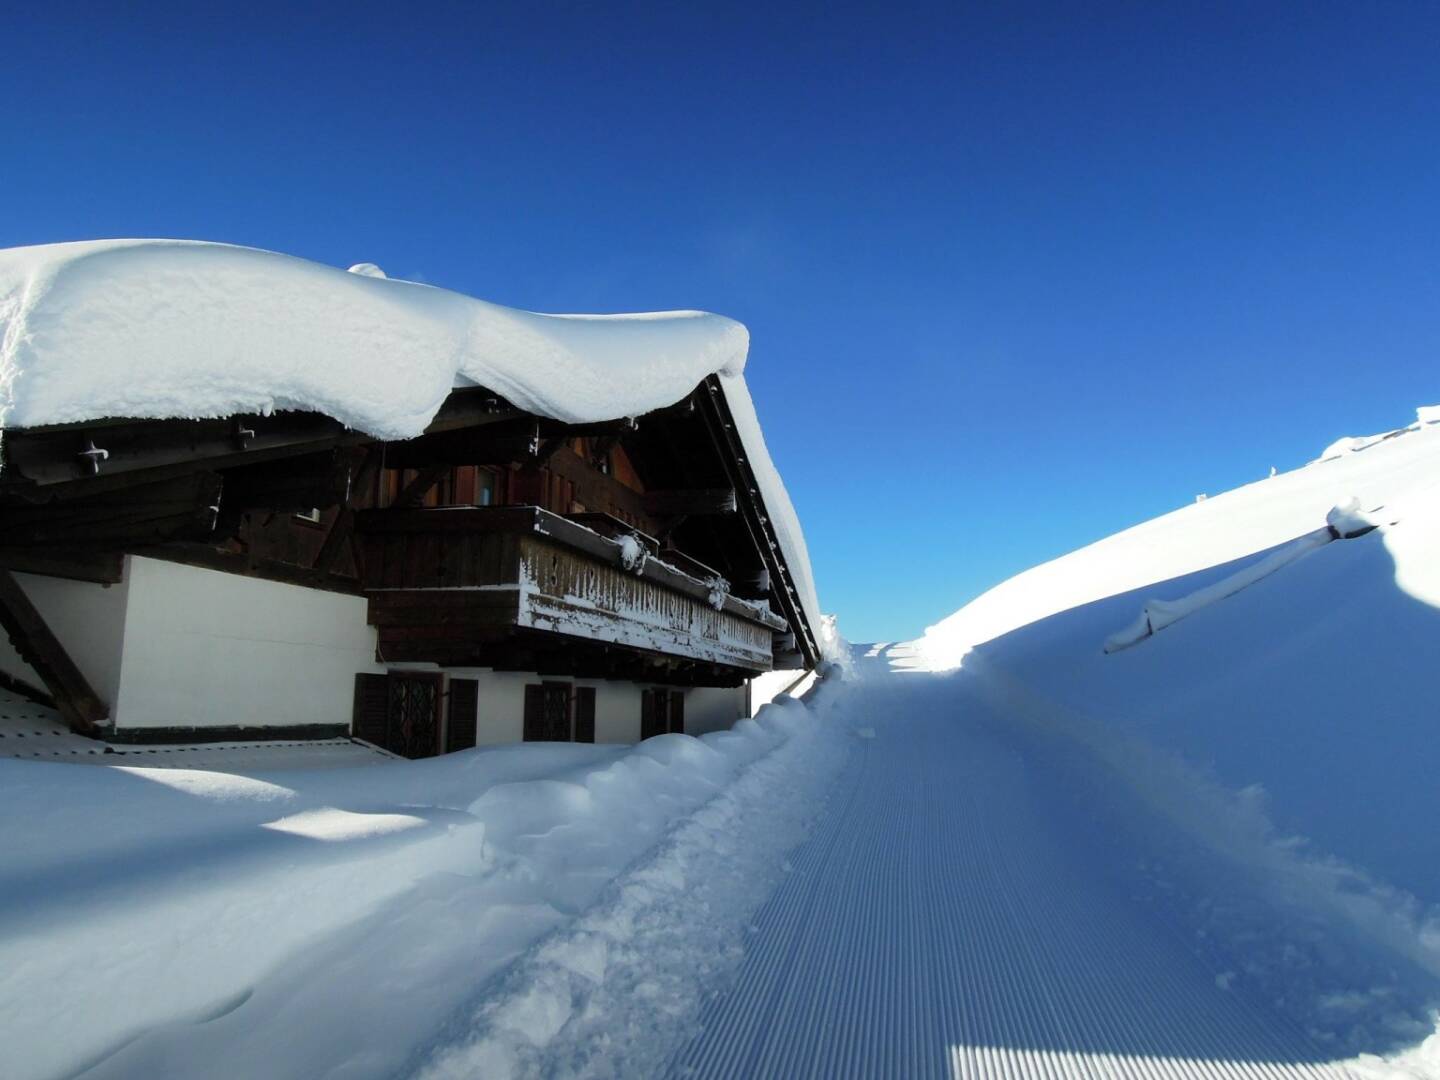 Haus, Schnee, Weg, Vigljoch, Südtirol